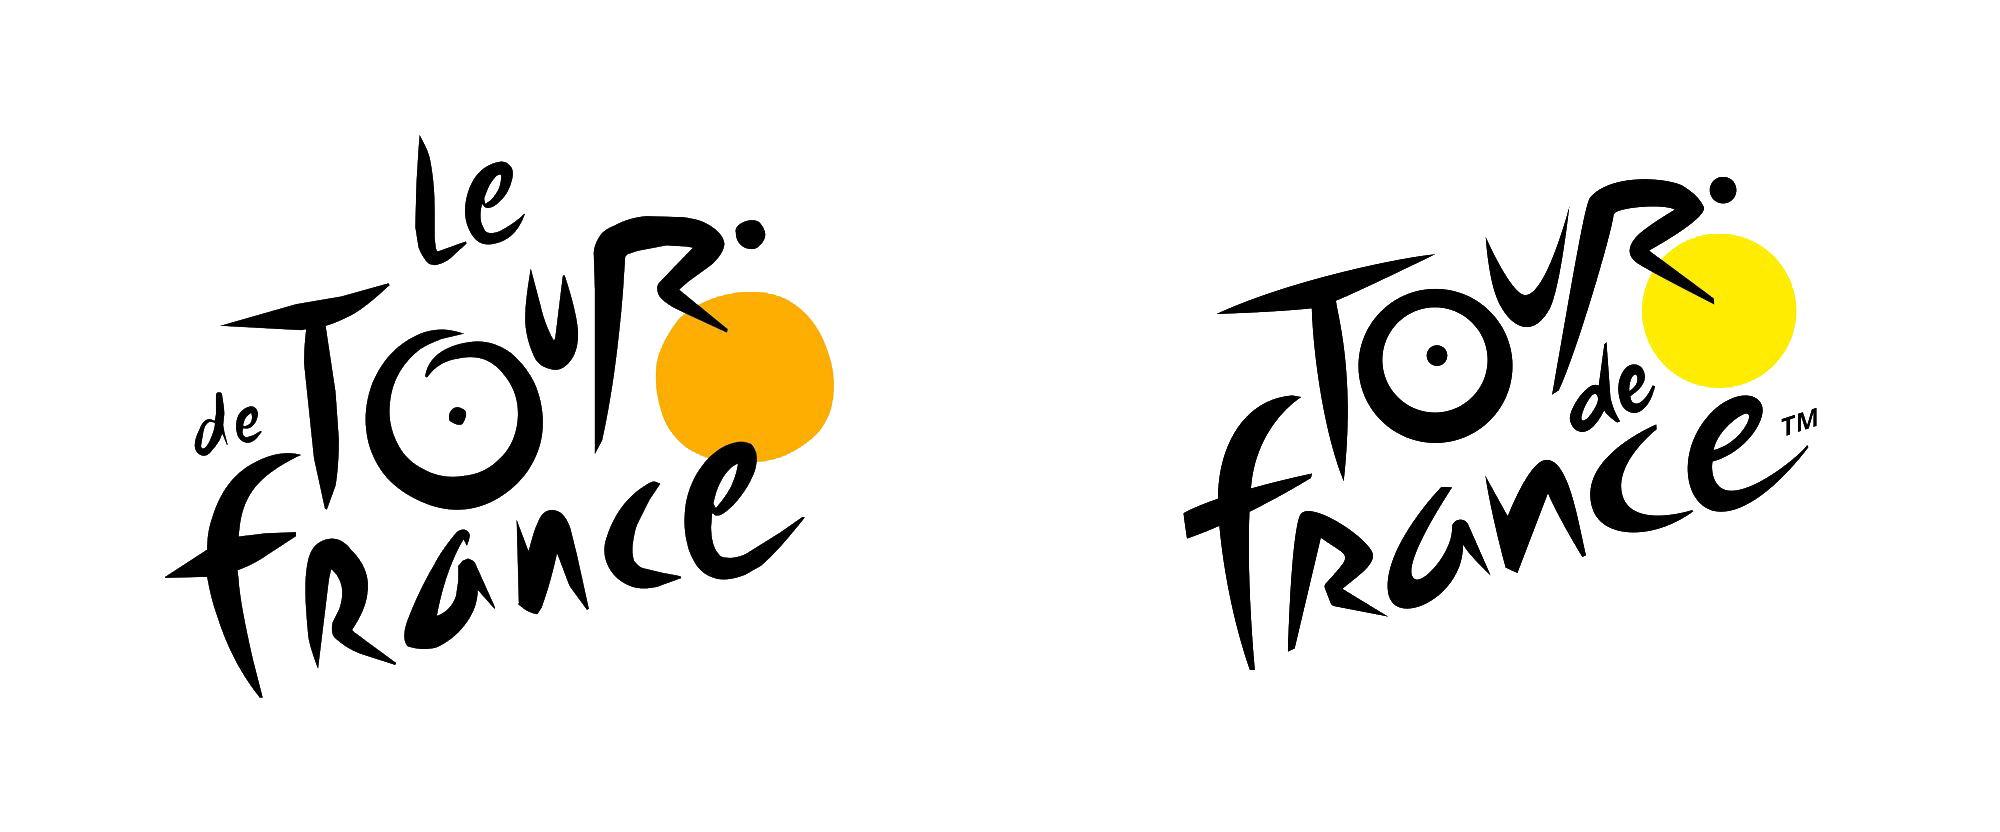 Tour de France Logotipo PNG image